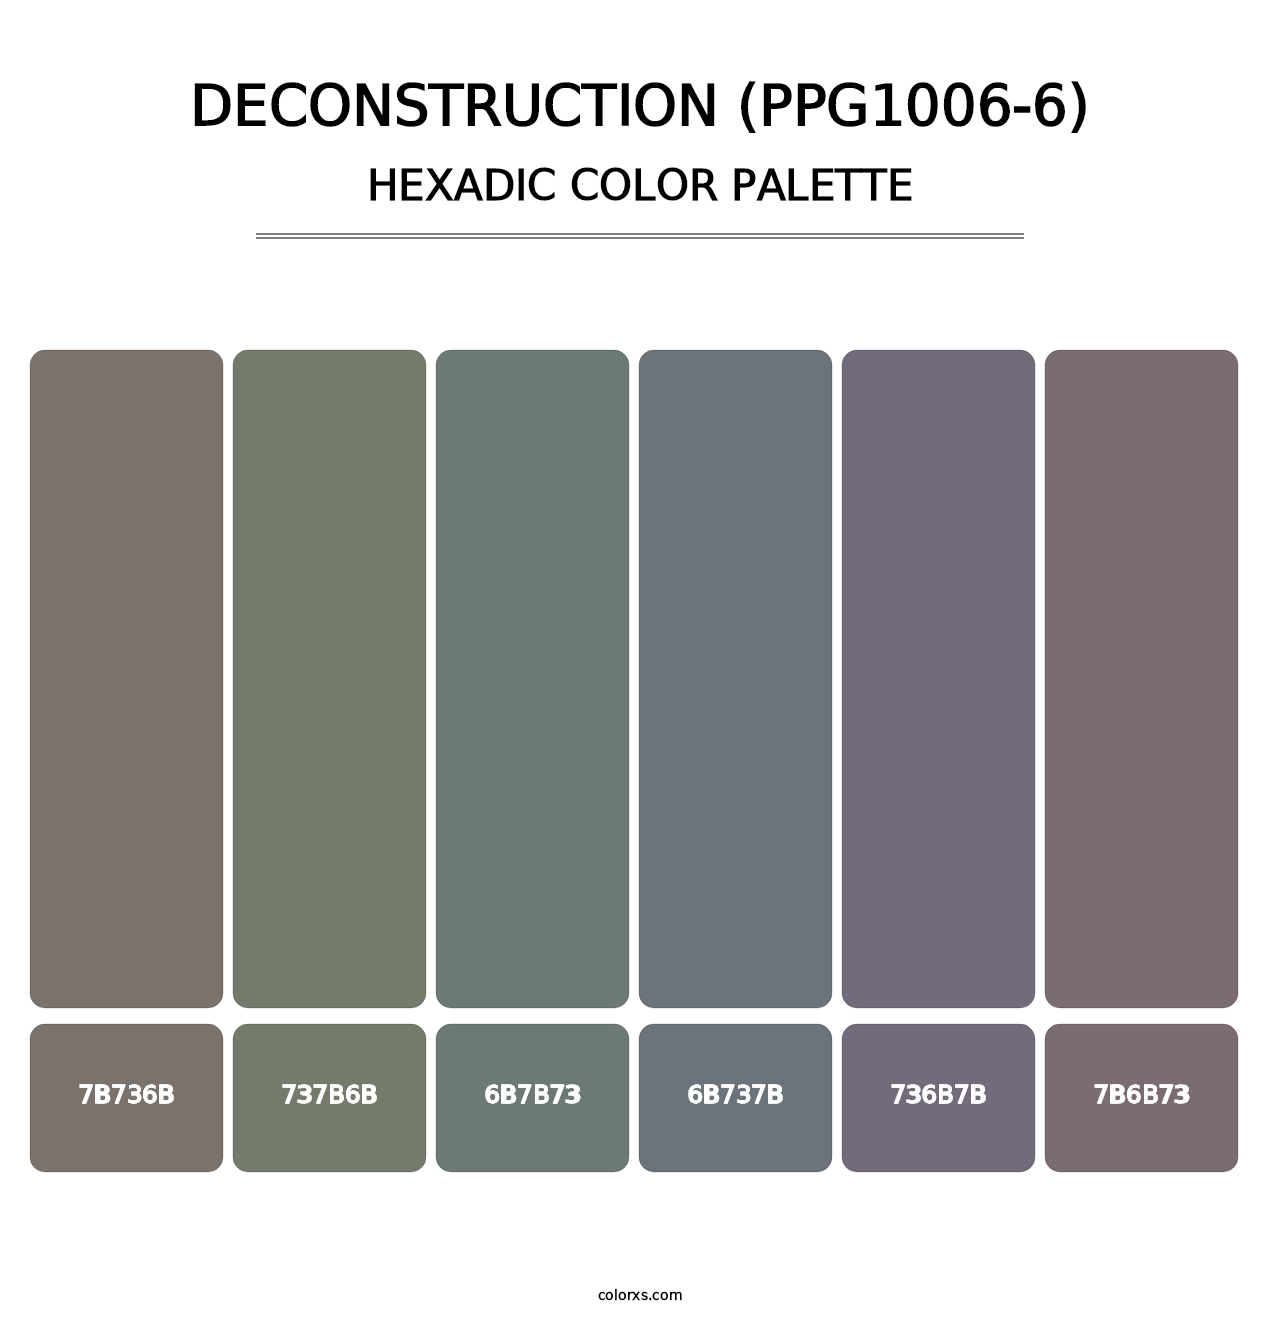 Deconstruction (PPG1006-6) - Hexadic Color Palette